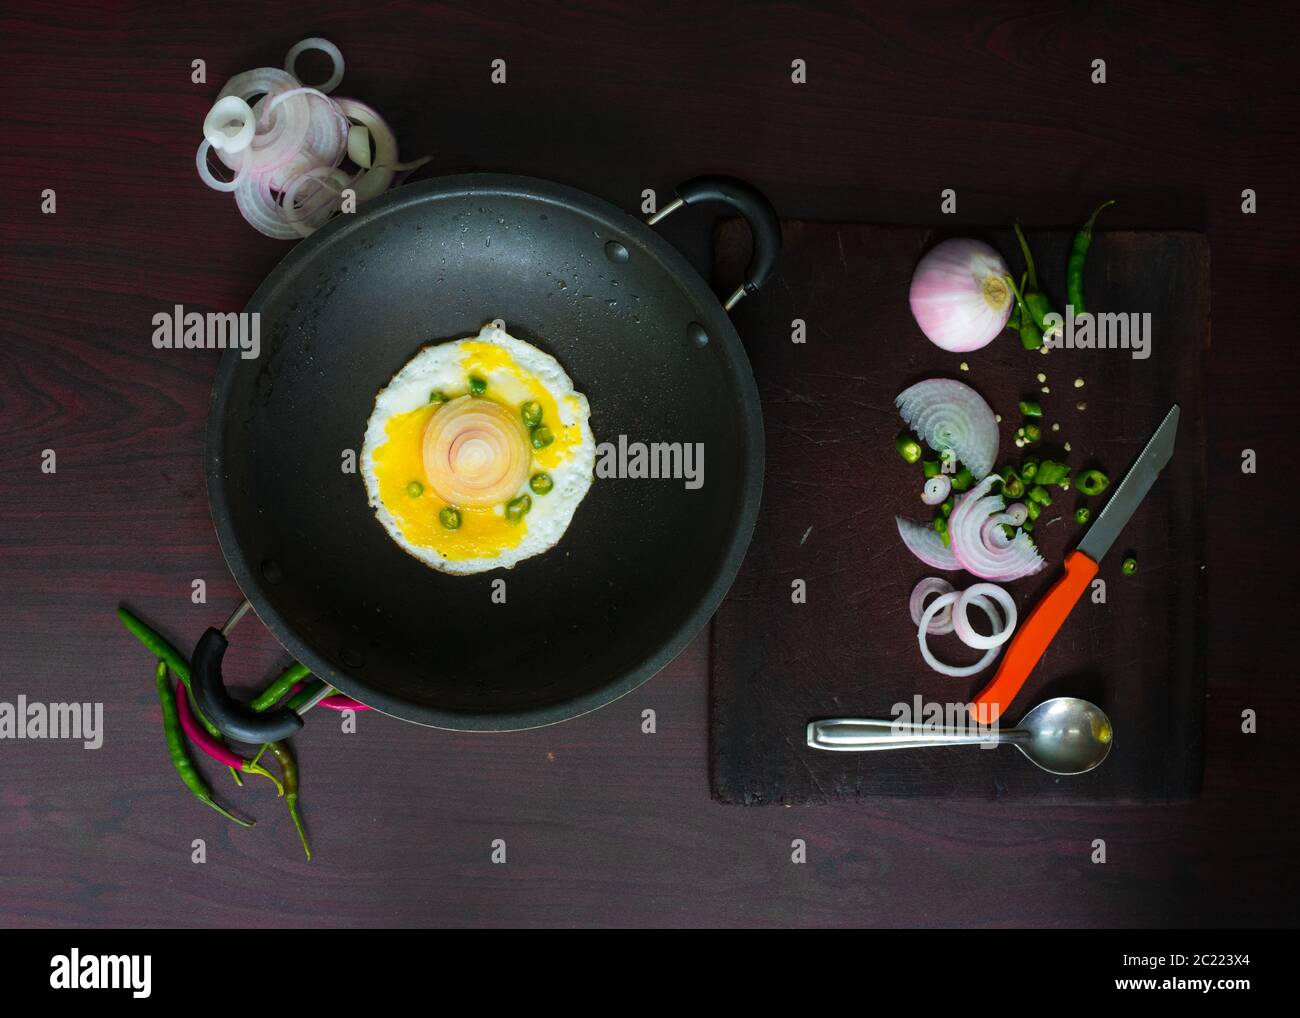 La photographie de nourriture d'oeuf garni de feuilles de froid, d'oignon et de curry sur le plateau de table semble délicieux et savoureux. Banque D'Images